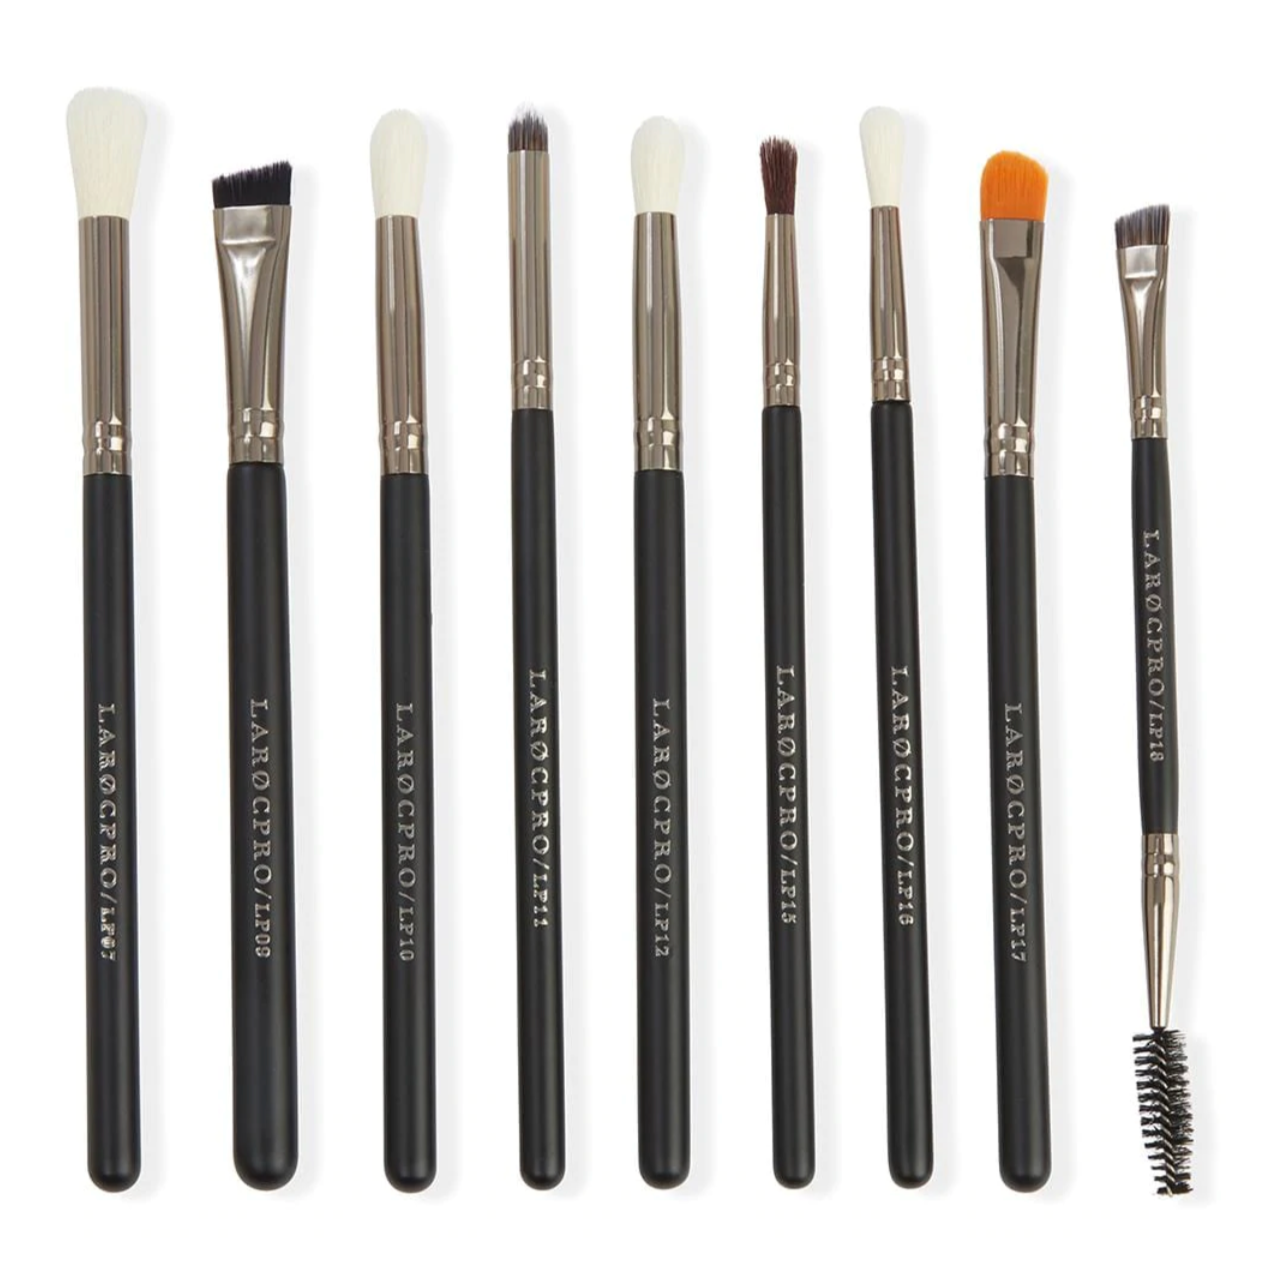 LaRoc PRO Master Luxe Brush Set - Eye brushes